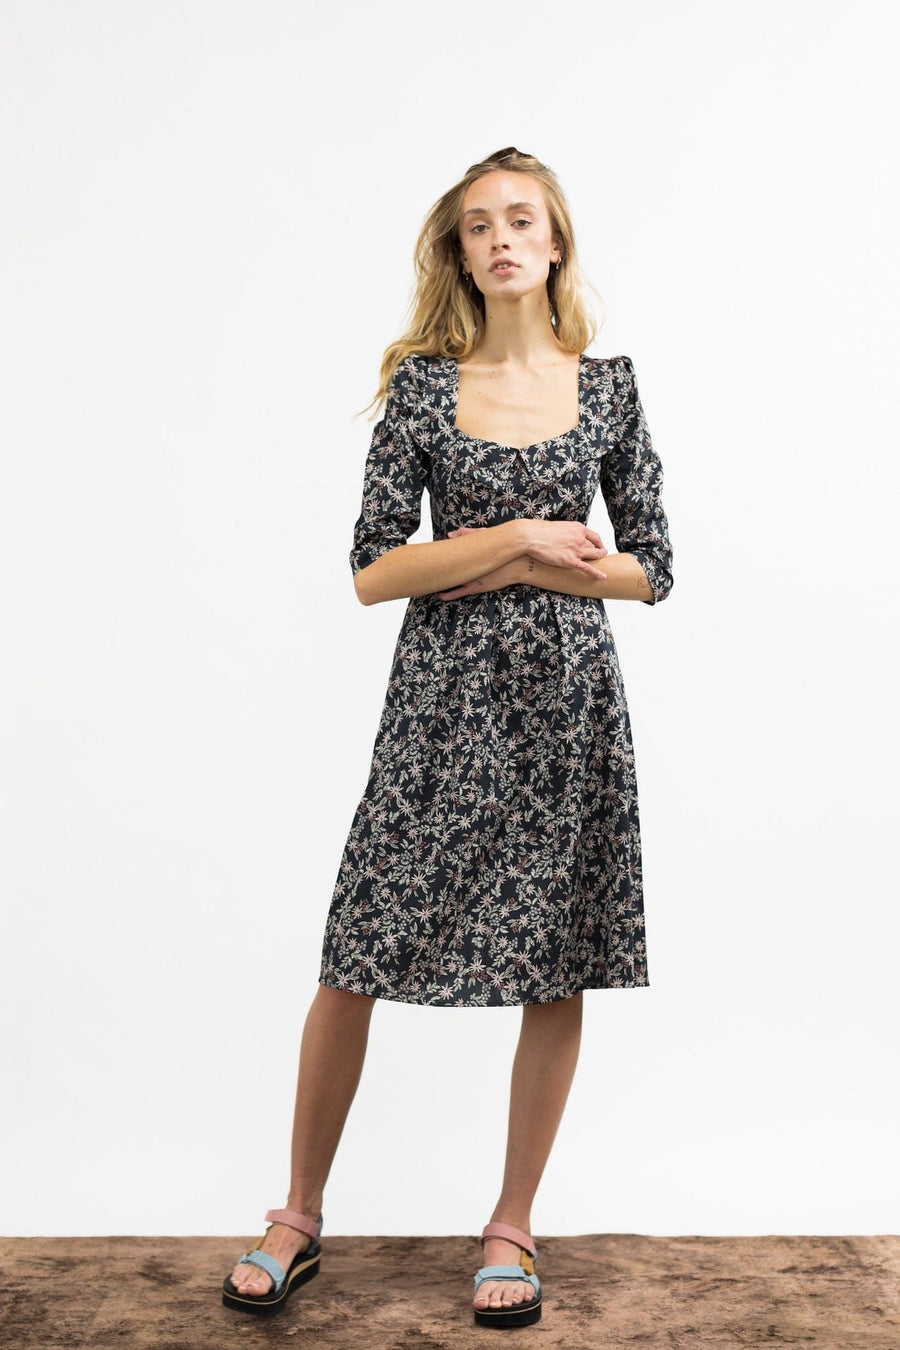 Marisol Dress / Black Floral Cotton